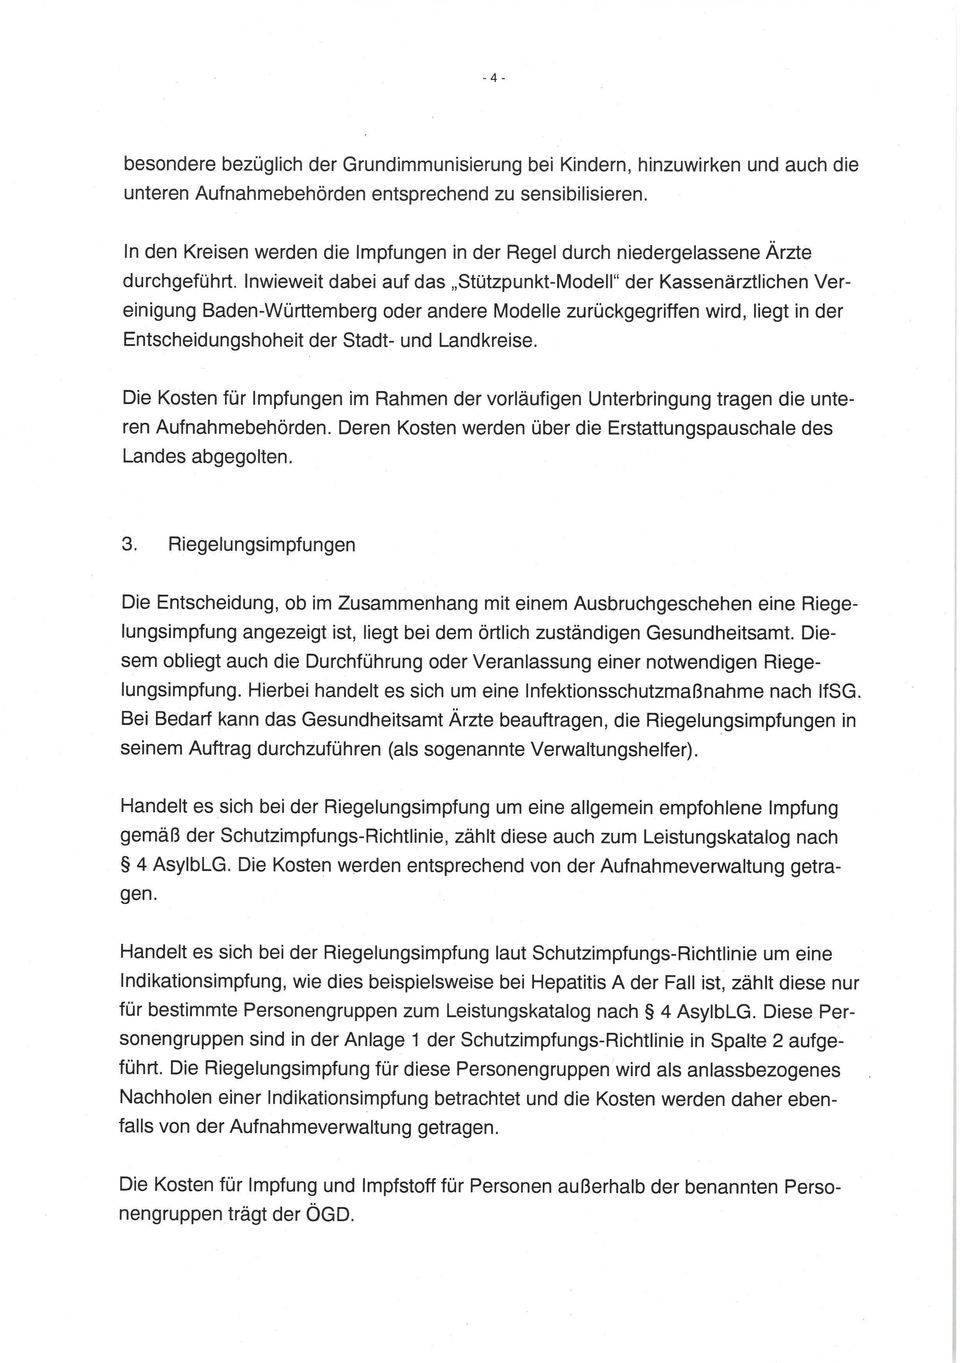 Inwieweit dabei auf das Stützpunkt-Modell" der Kassenärztlichen Vereinigung Baden-Württemberg oder andere Modelle zurückgegriffen wird, liegt in der Entscheidungshoheit der Stadt- und Landkreise.